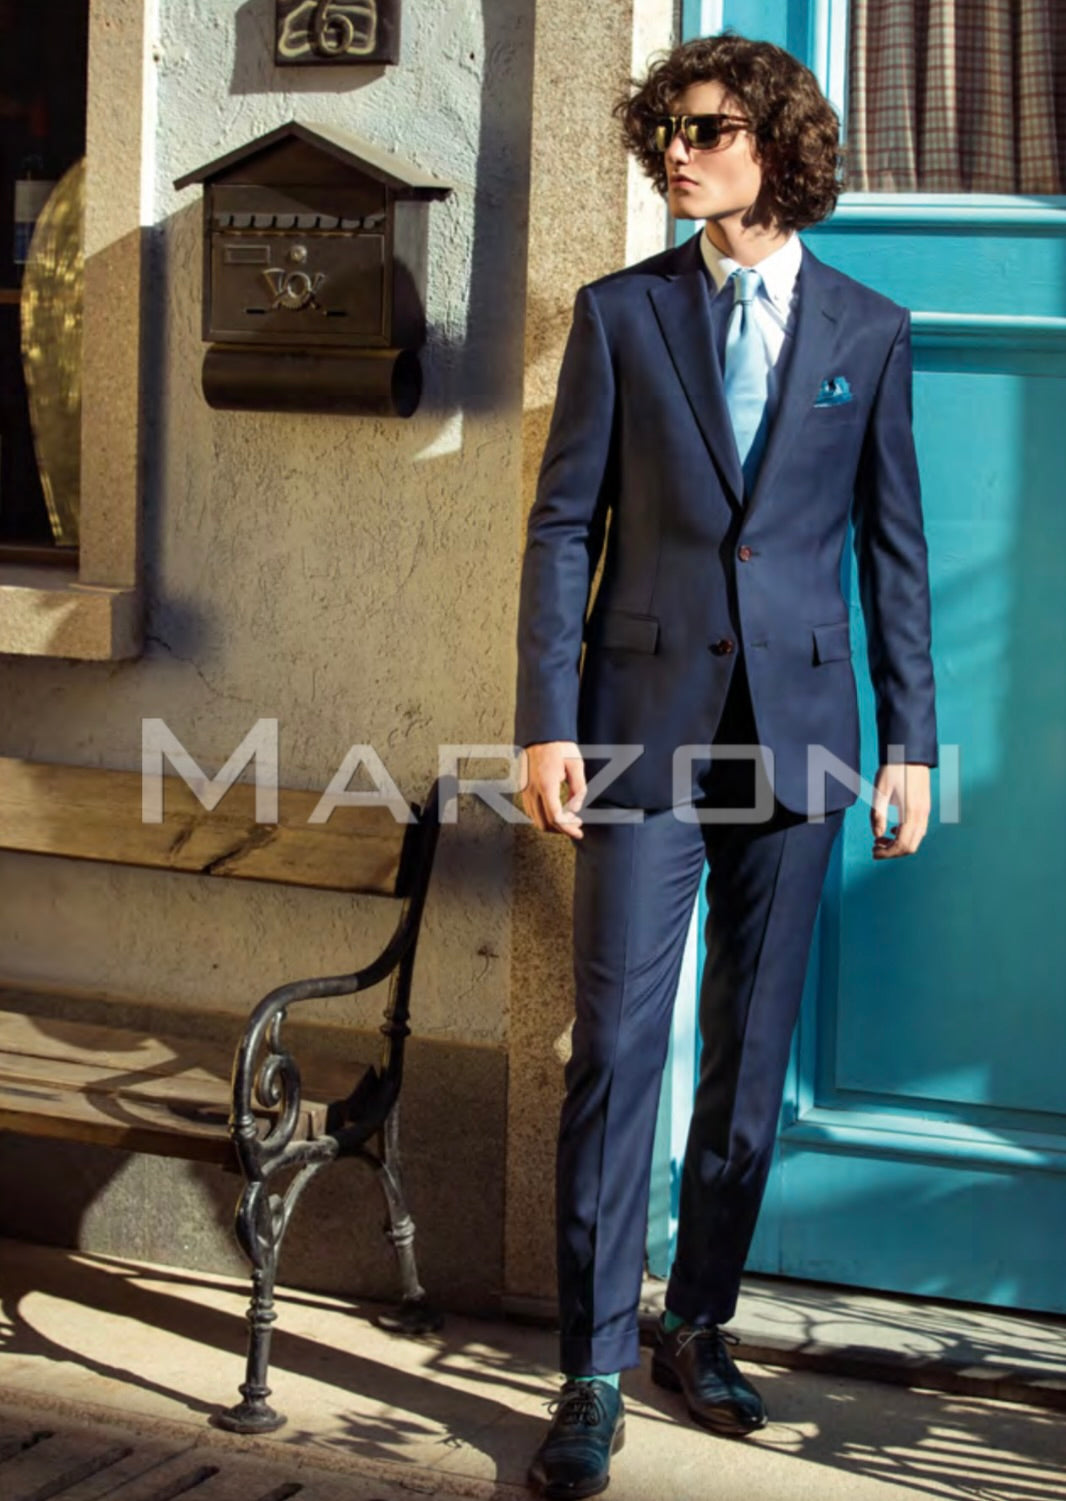 Marzoni Blue Suit